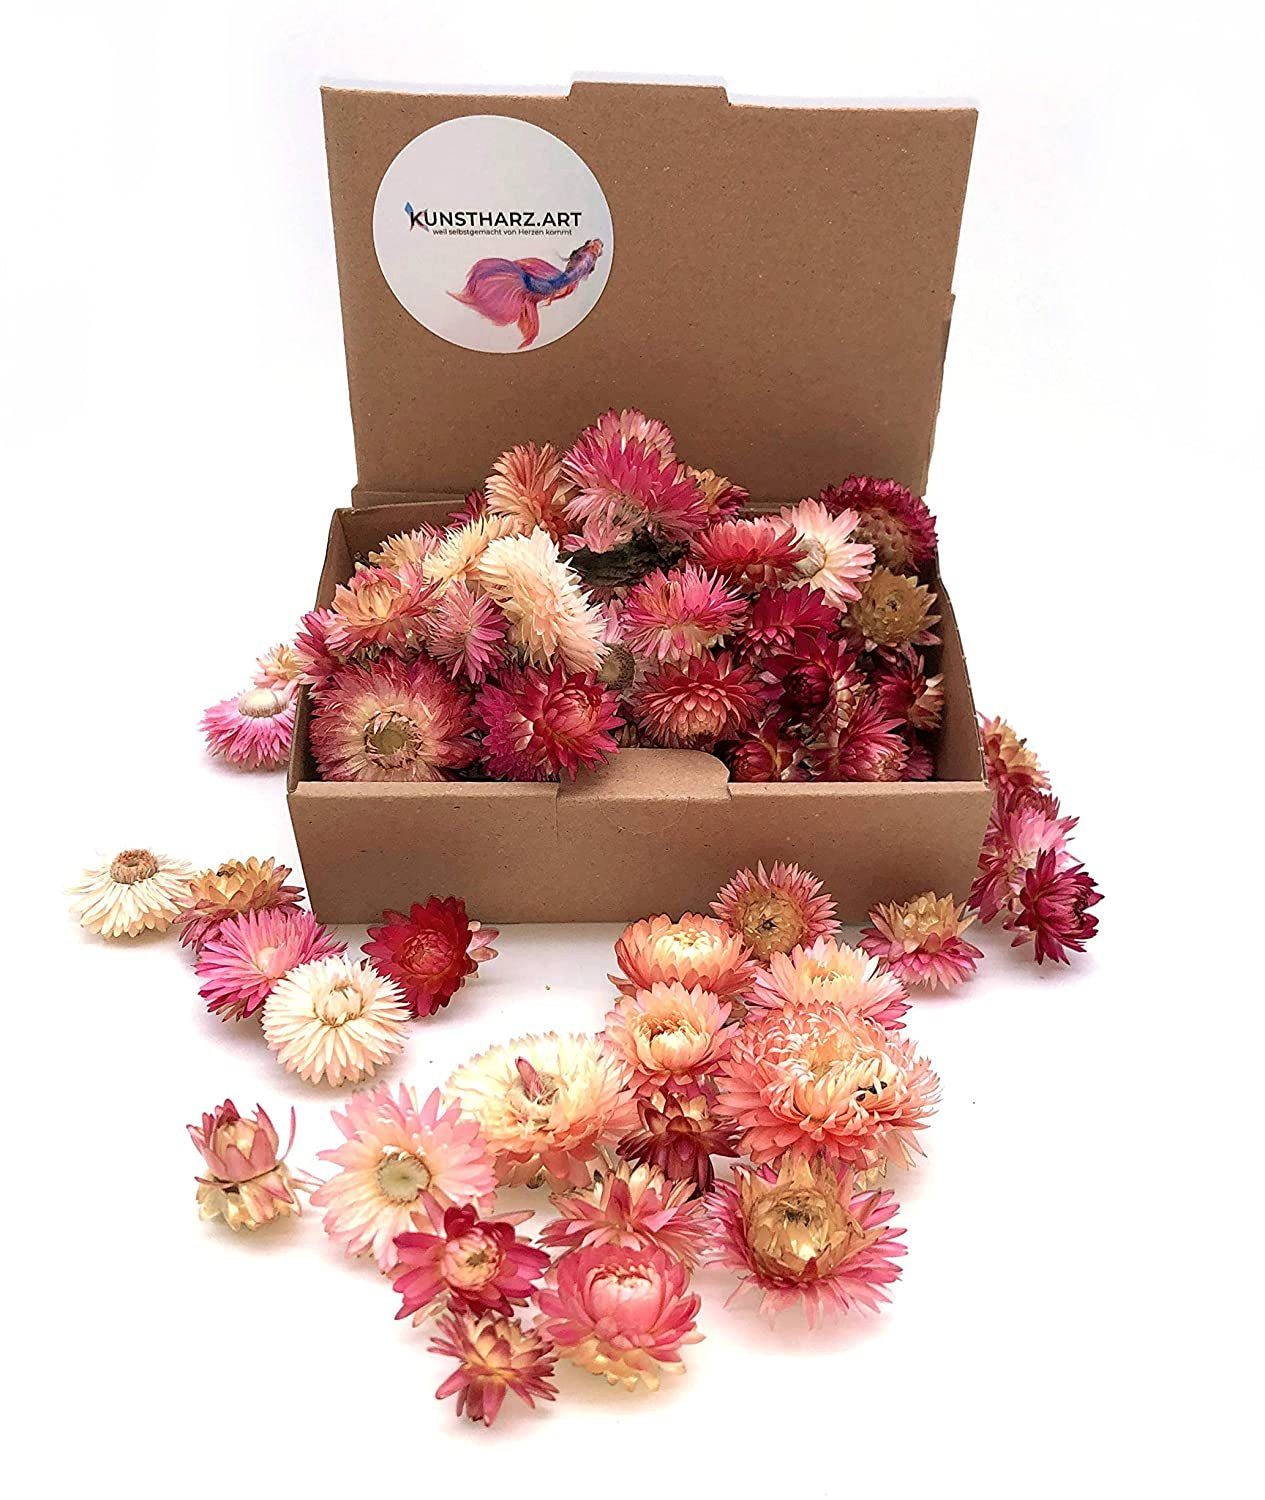 Trockenblume Strohblumenköpfe Helichrysum getrocknet: gemischt oder farblich sortiert - Rosa, Kunstharz.Art